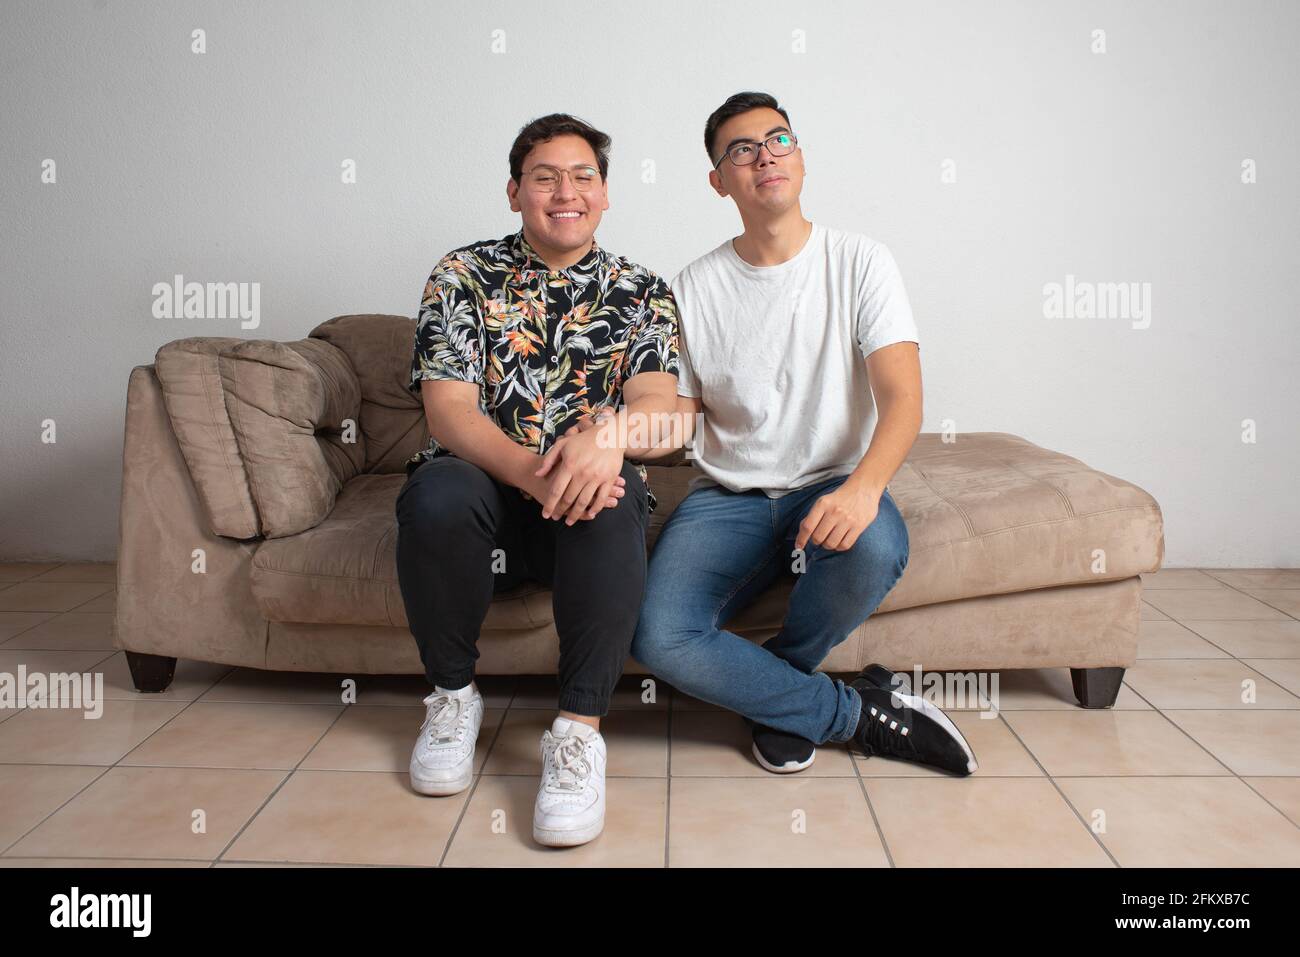 Männliches Paar, das in ihrem leeren Wohnzimmer sitzt, schaut glücklich Am Horizont Stockfoto